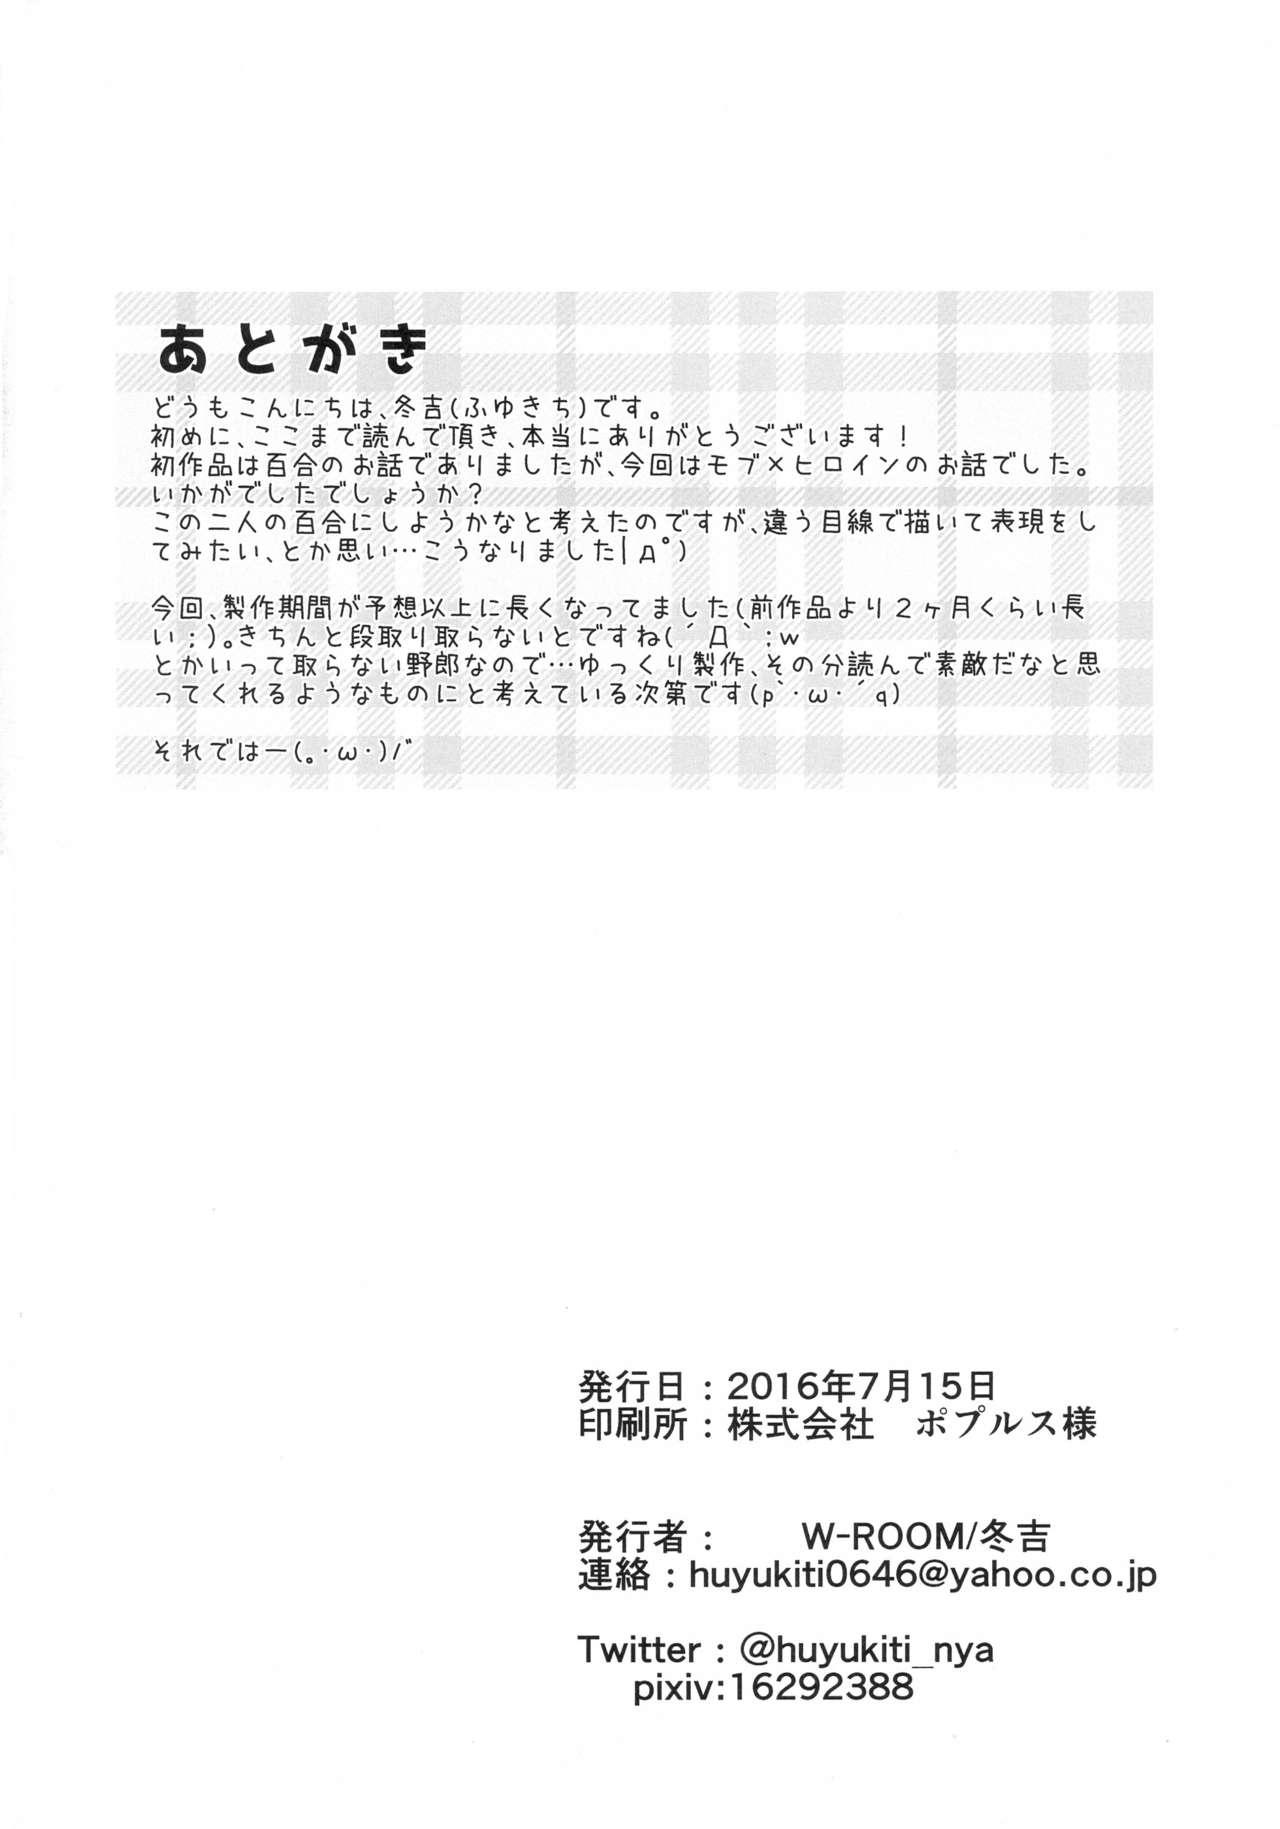 Snatch Ecchi na Ojou-sama wa suki desu ka? - Hidan no aria Cream - Page 26